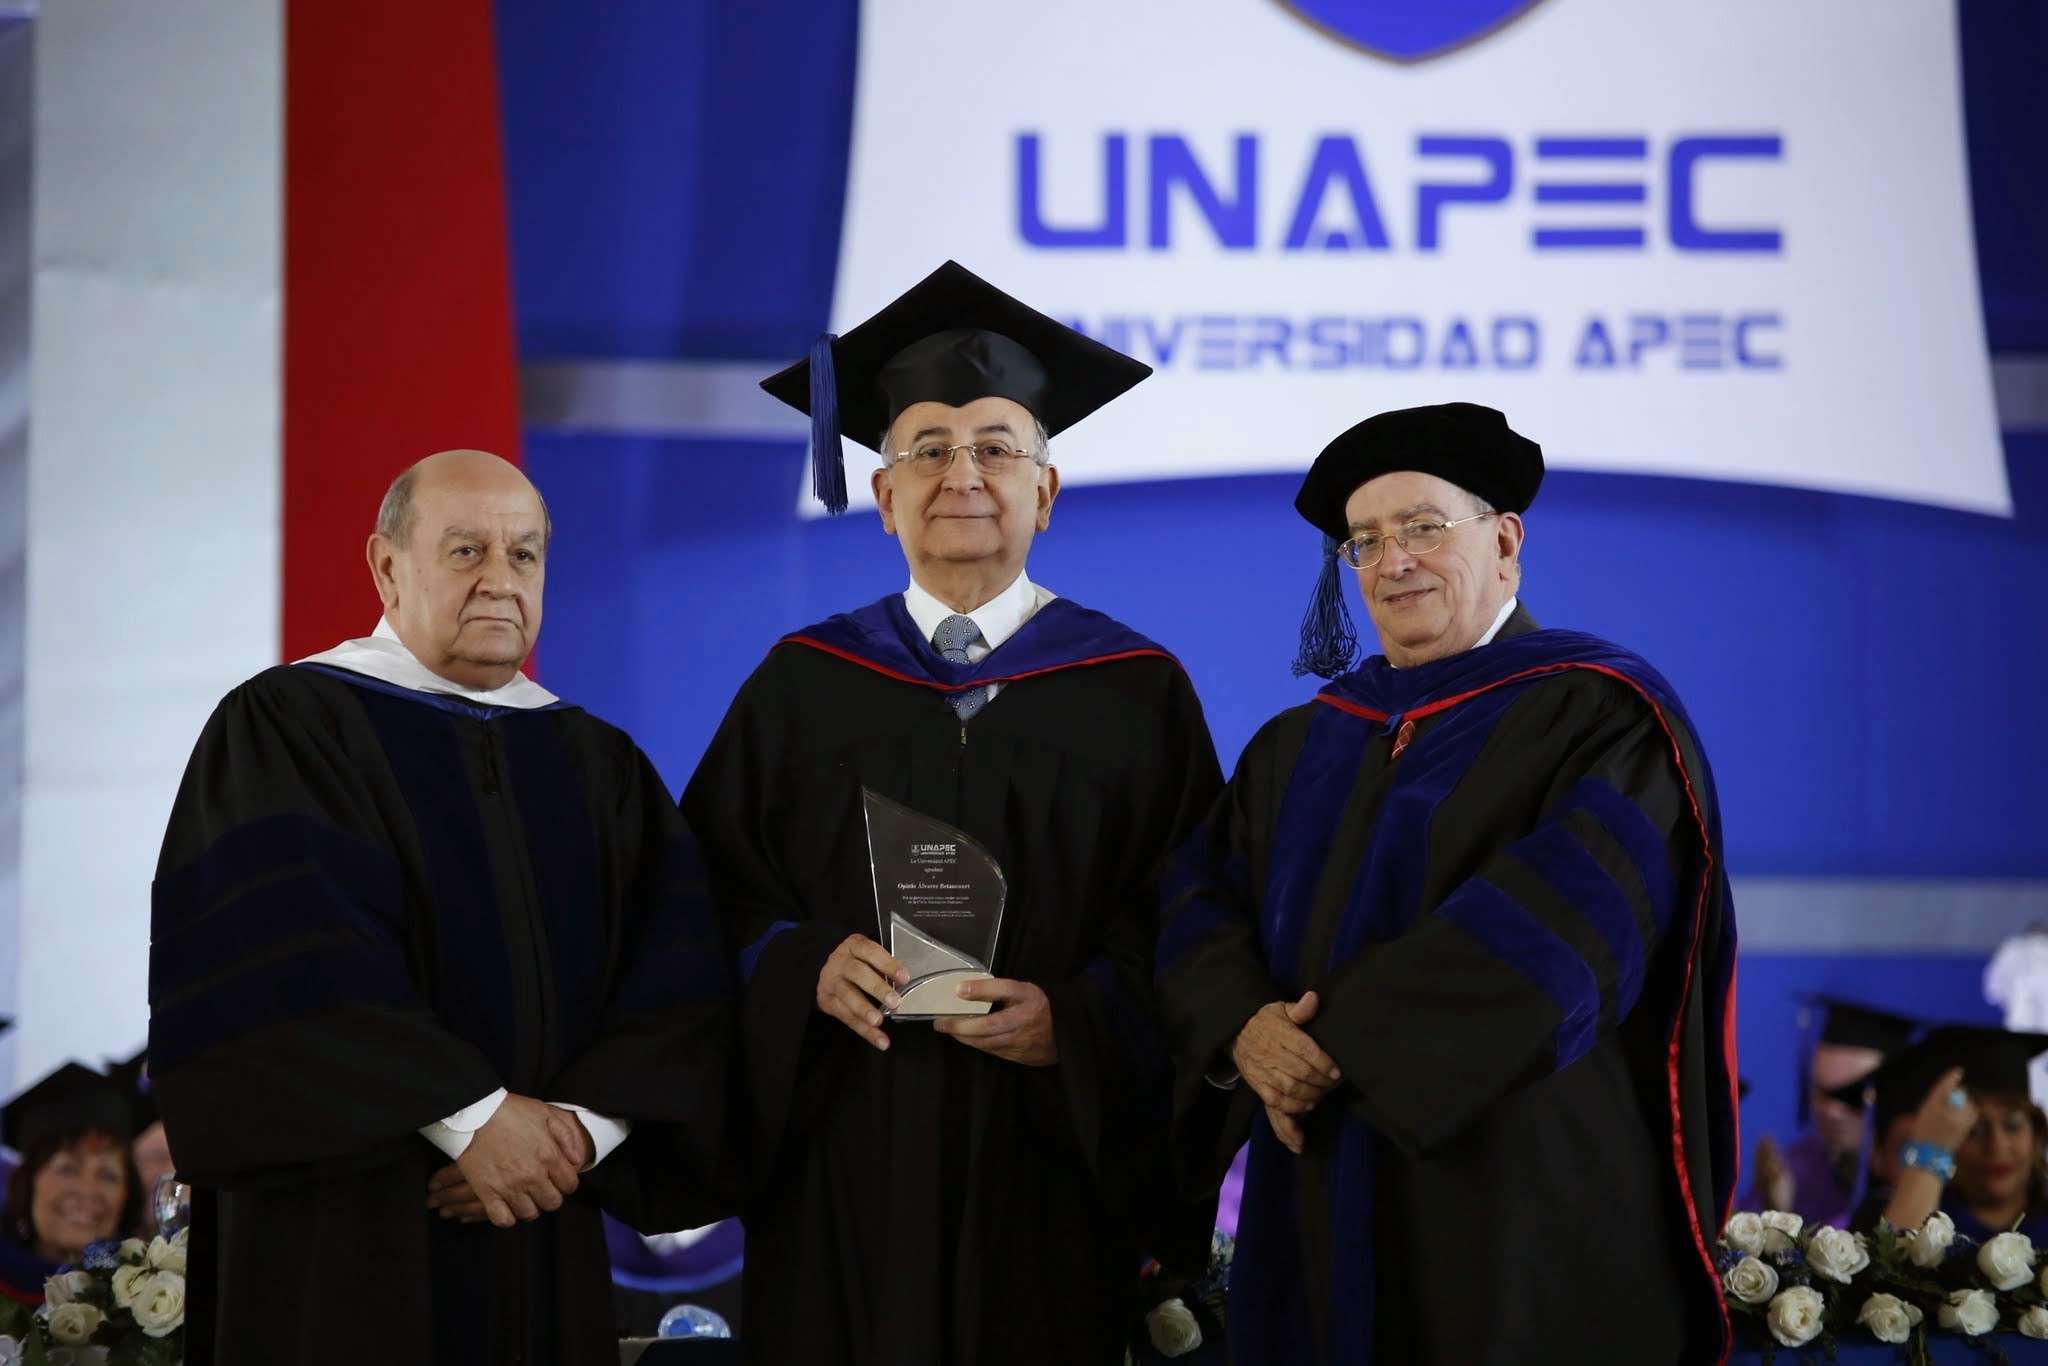 Franklyn Holguín Haché, Presidente de APEC, junto a Radhamés Mejía, Rector de UNAPEC mientras entregaban placa de reconocimiento a Opinio Álvarez Betancourt